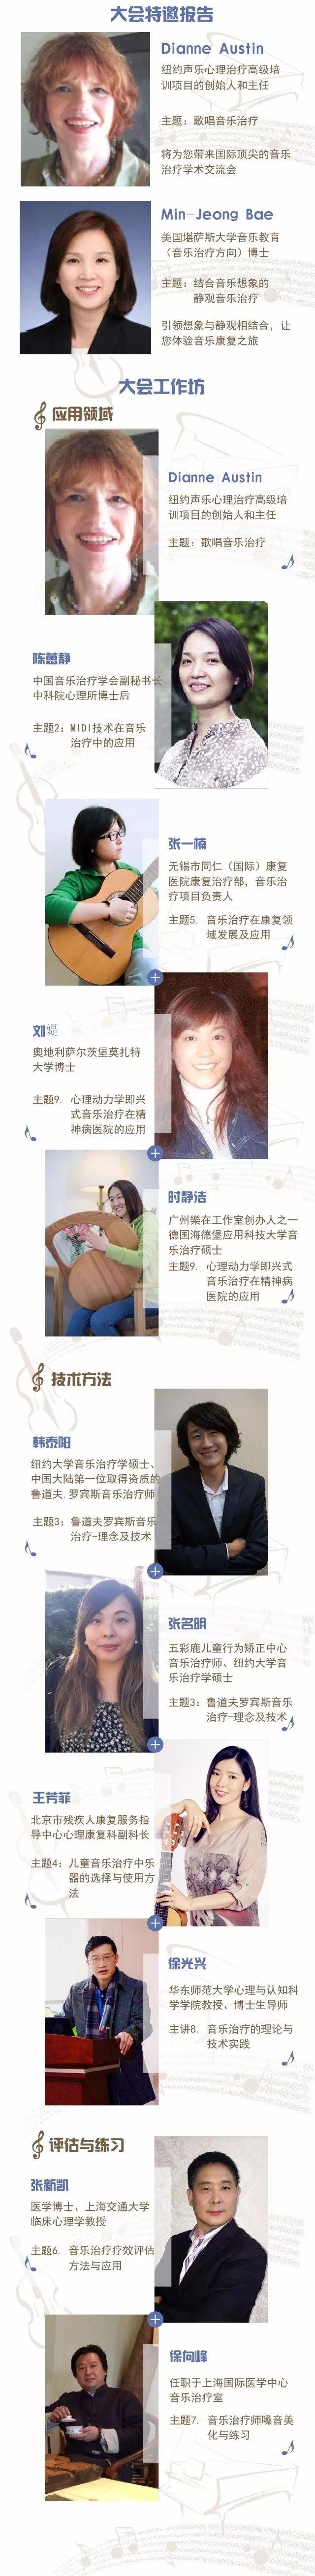 中国音乐治疗学会第十三届学术交流大会-1.jpg